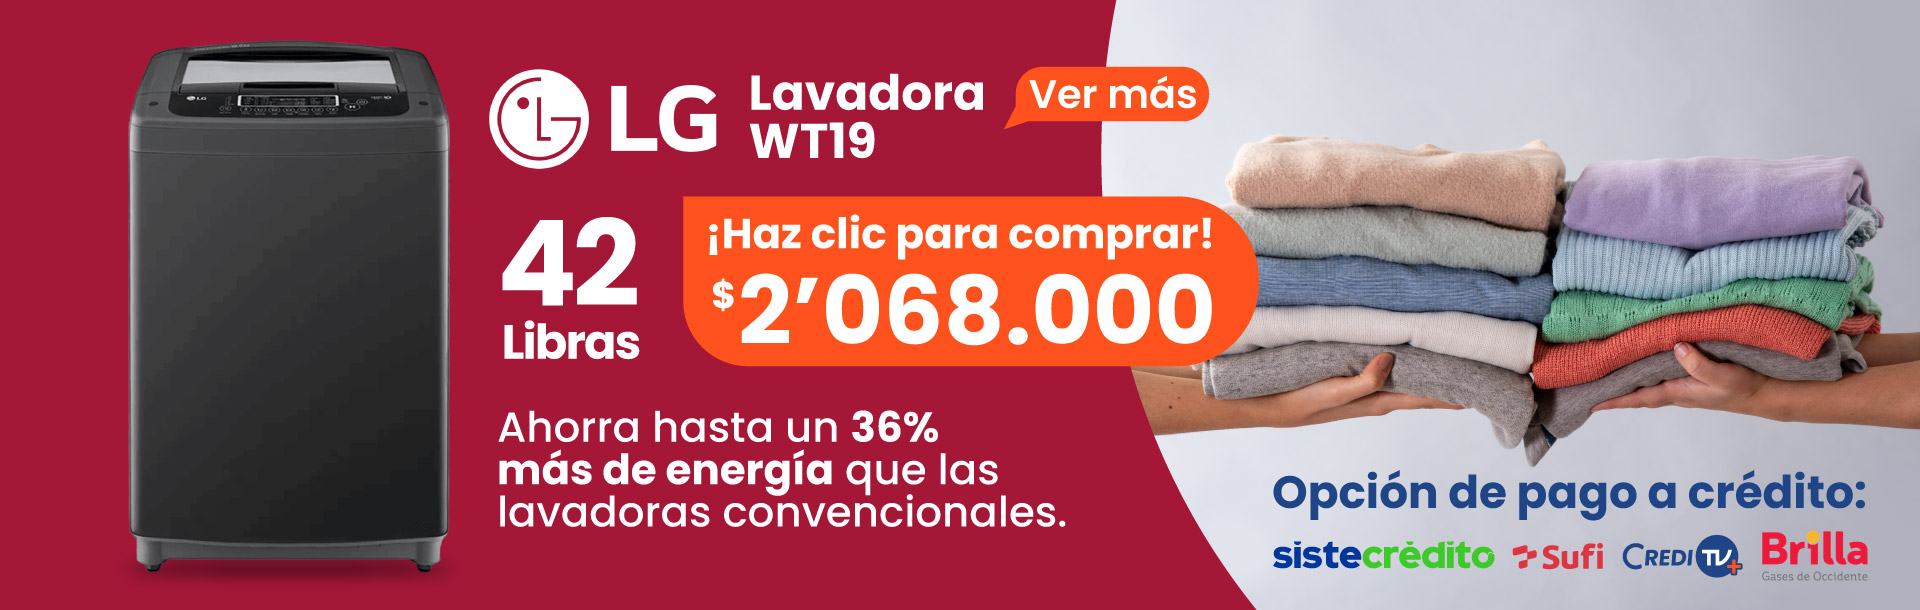 Principal-LG-Lavadora-WT19